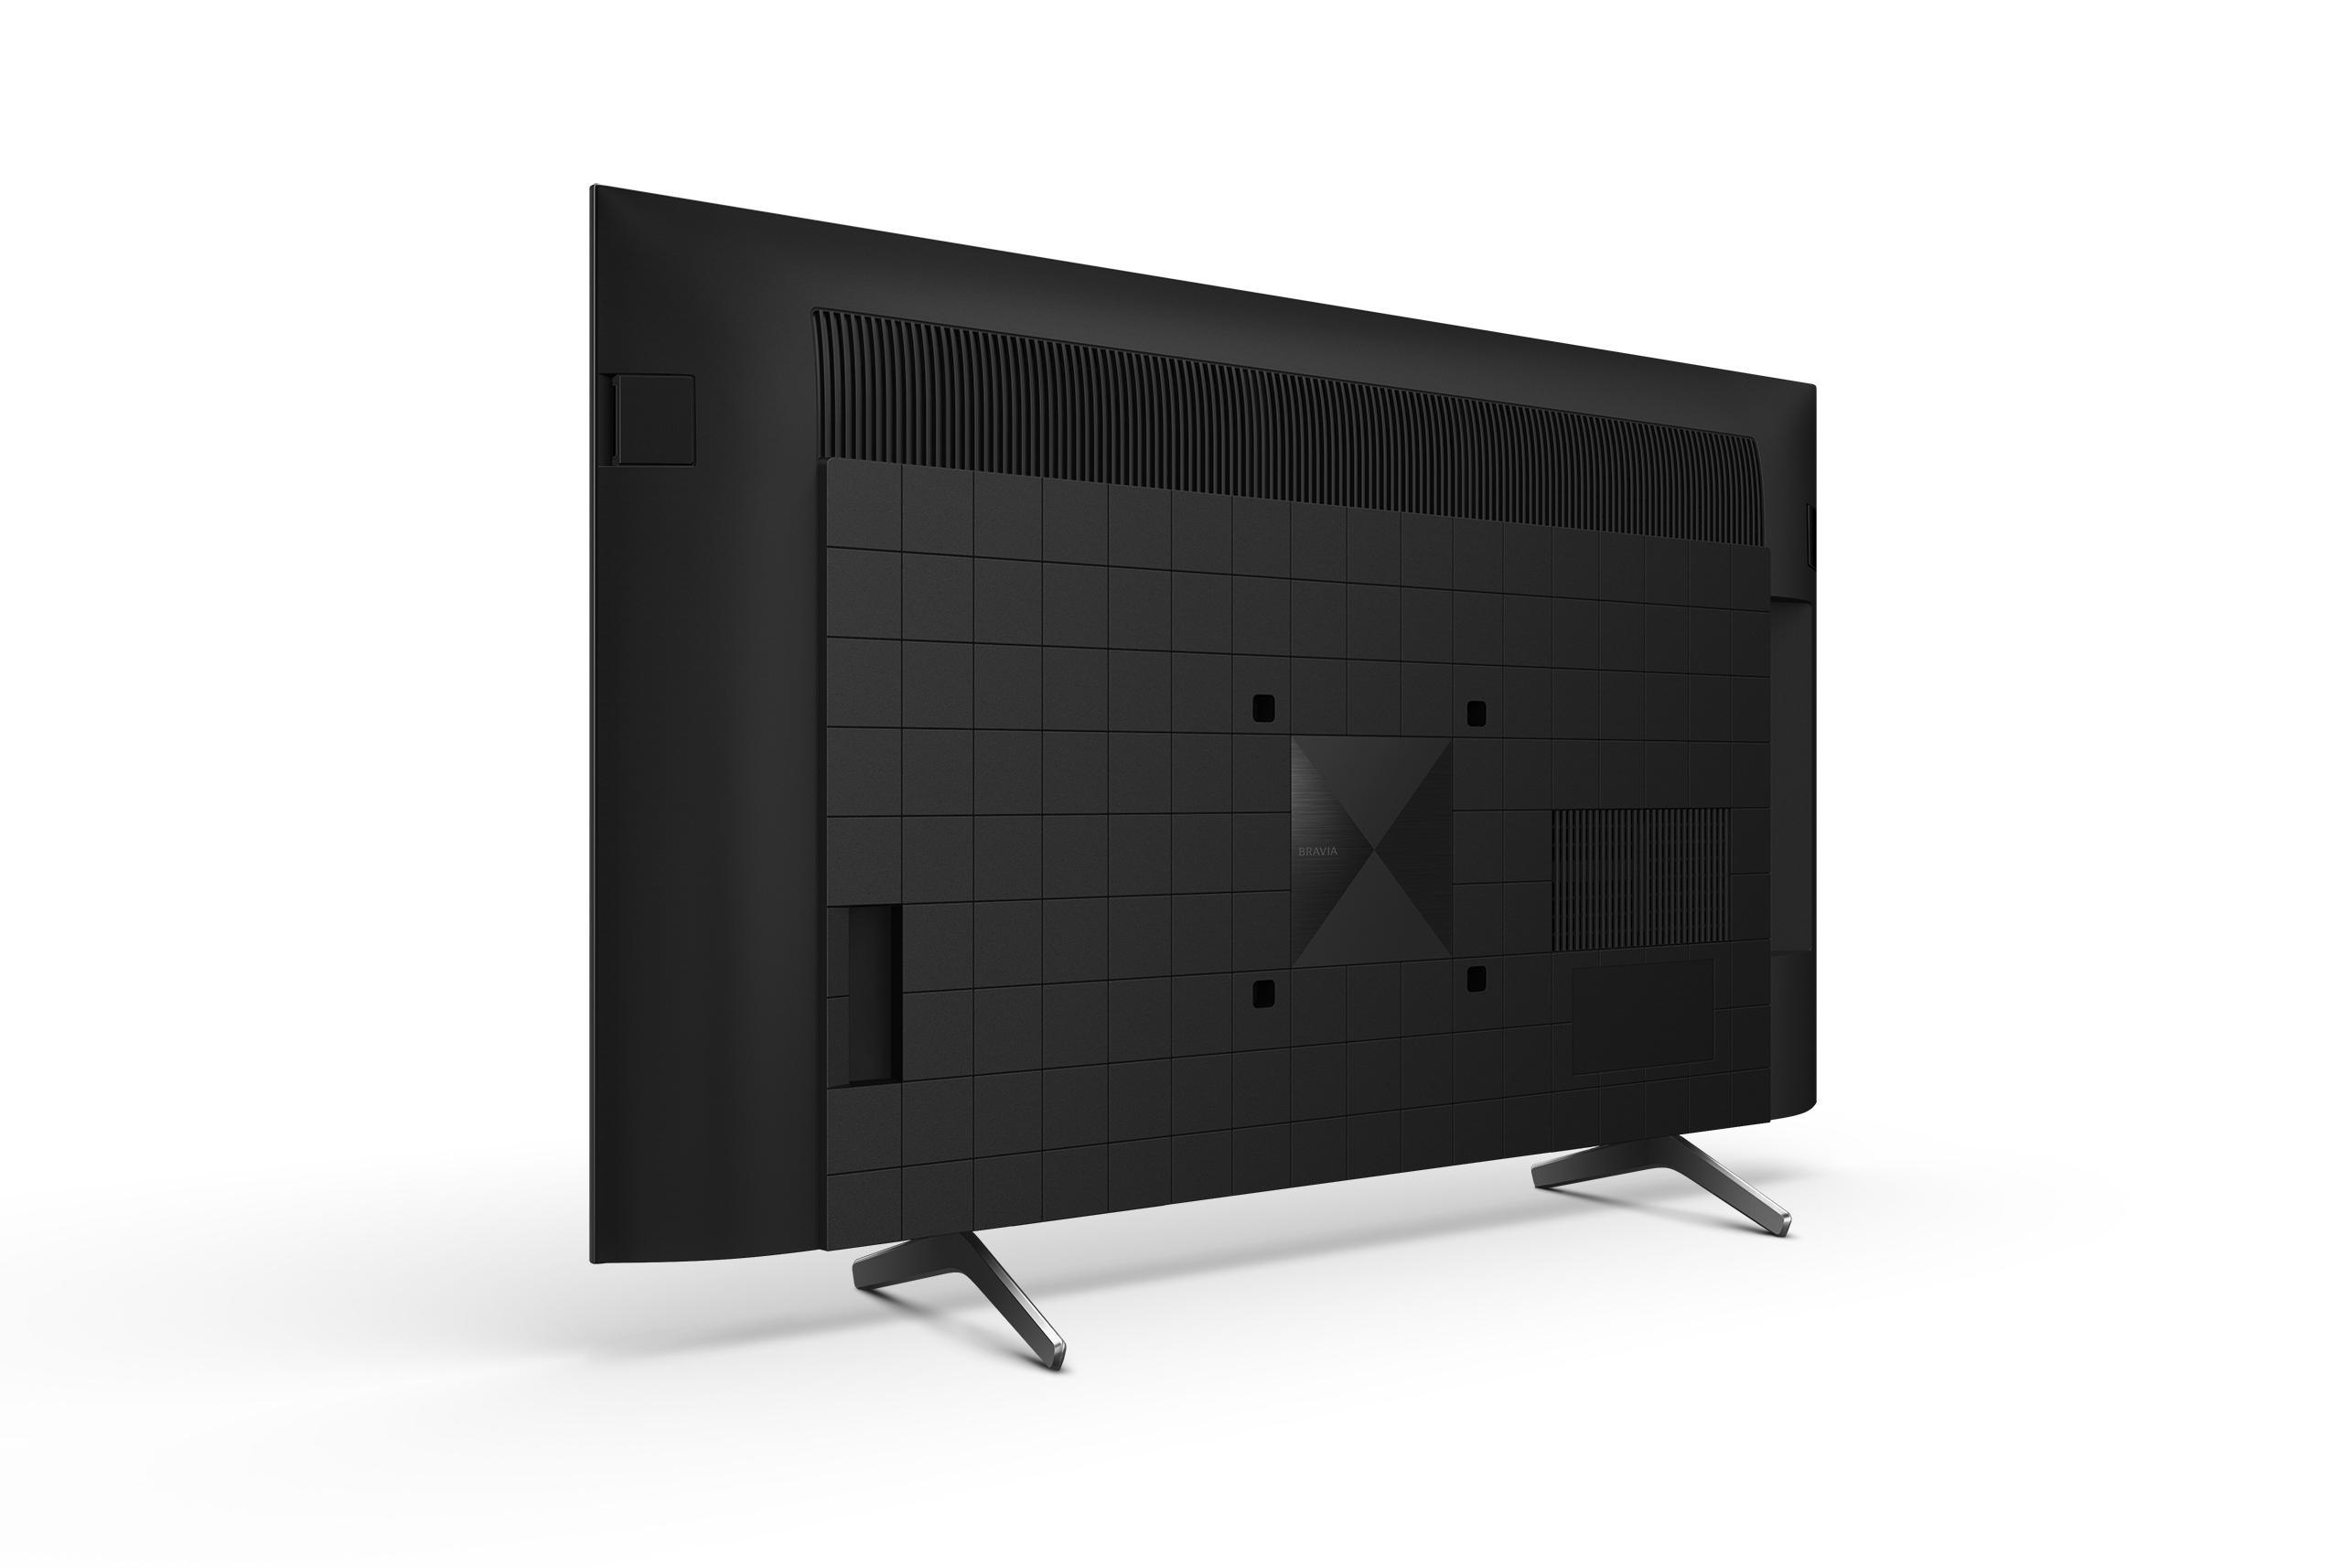 SONY XR-50X90J LED Zoll (Flat, UHD / 4K, 126 cm, TV, SMART 50 TV Google TV)